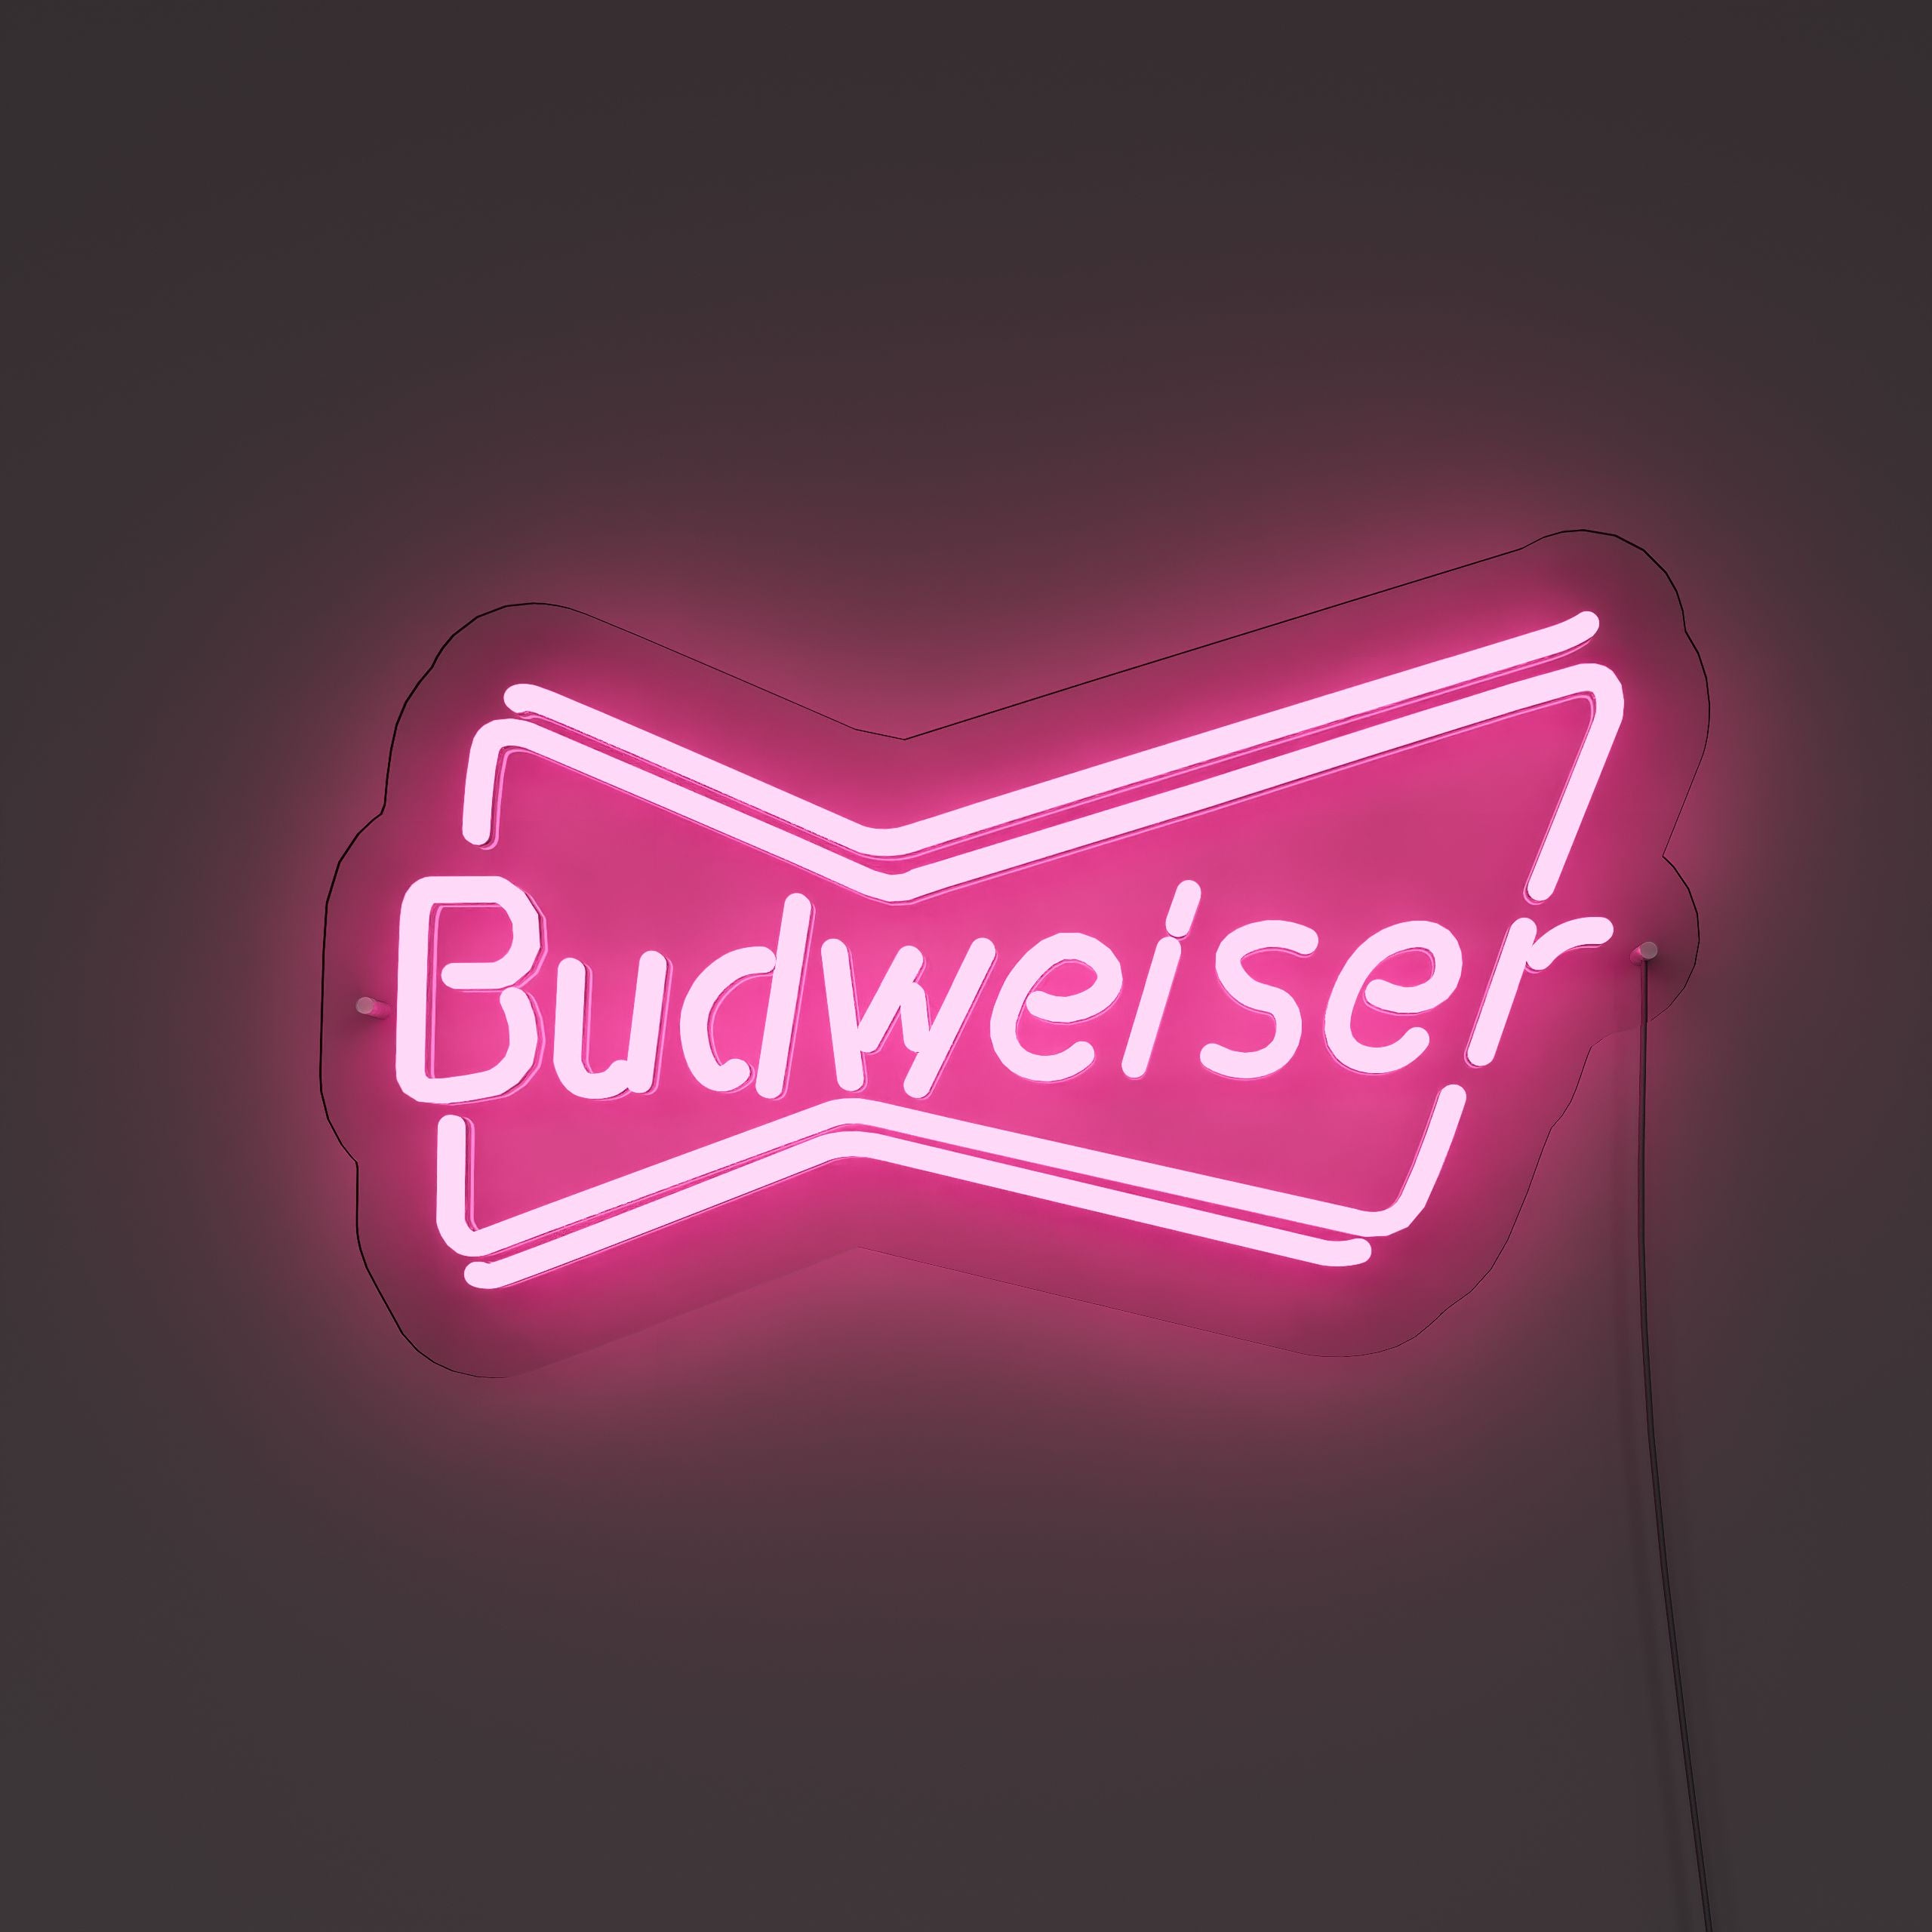 budweiser-neon-sign-DeepPink-Neon-sign-Lite